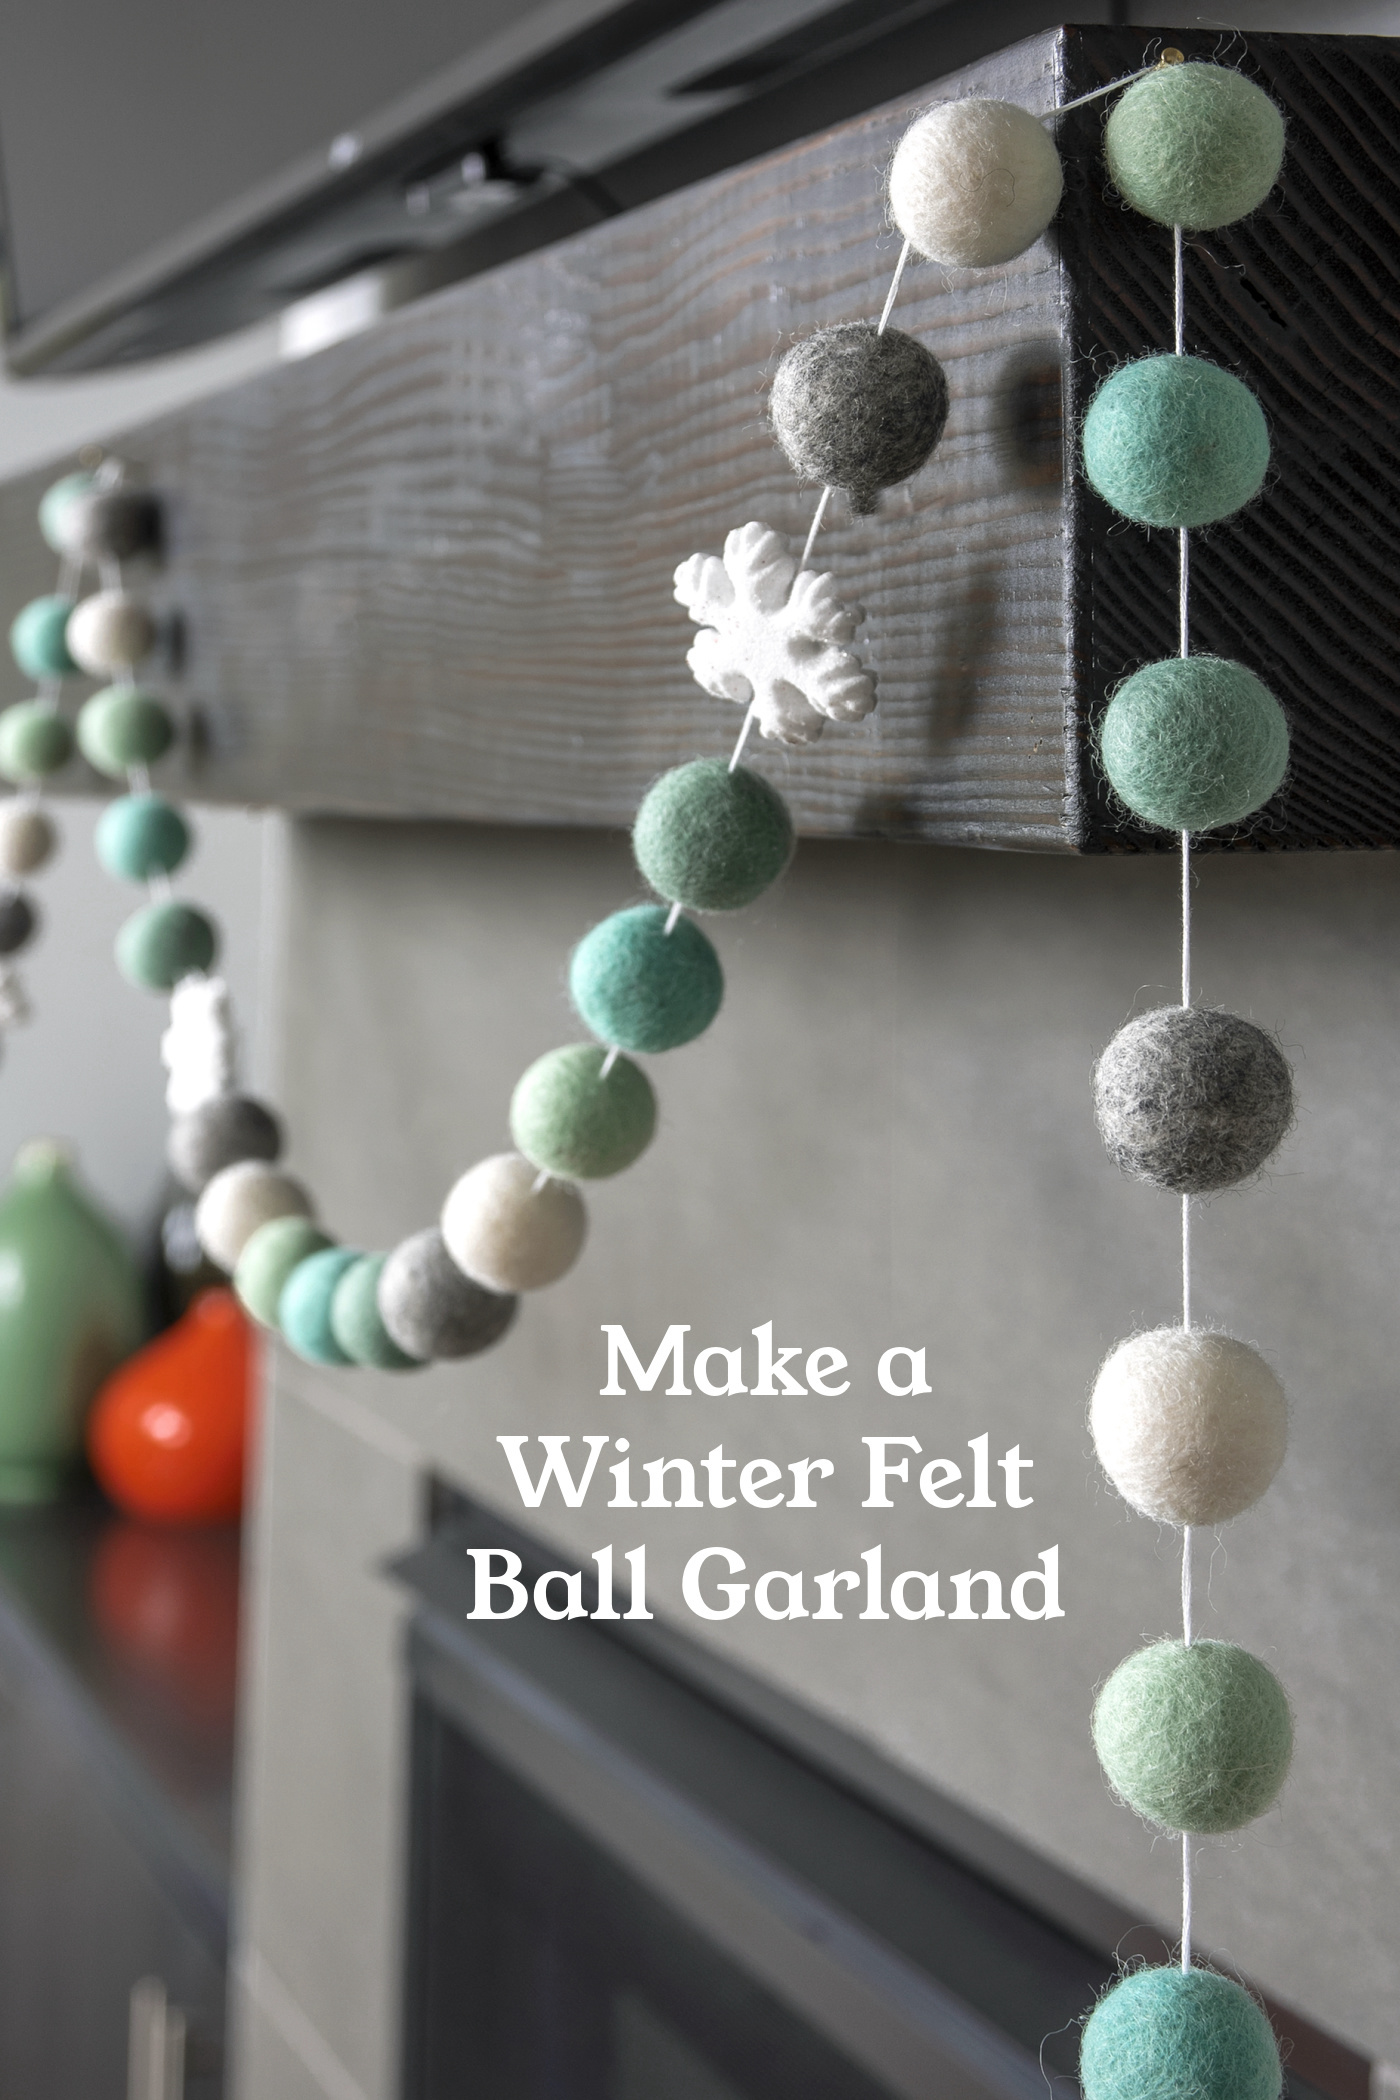 Make a Winter Felt Ball Garland